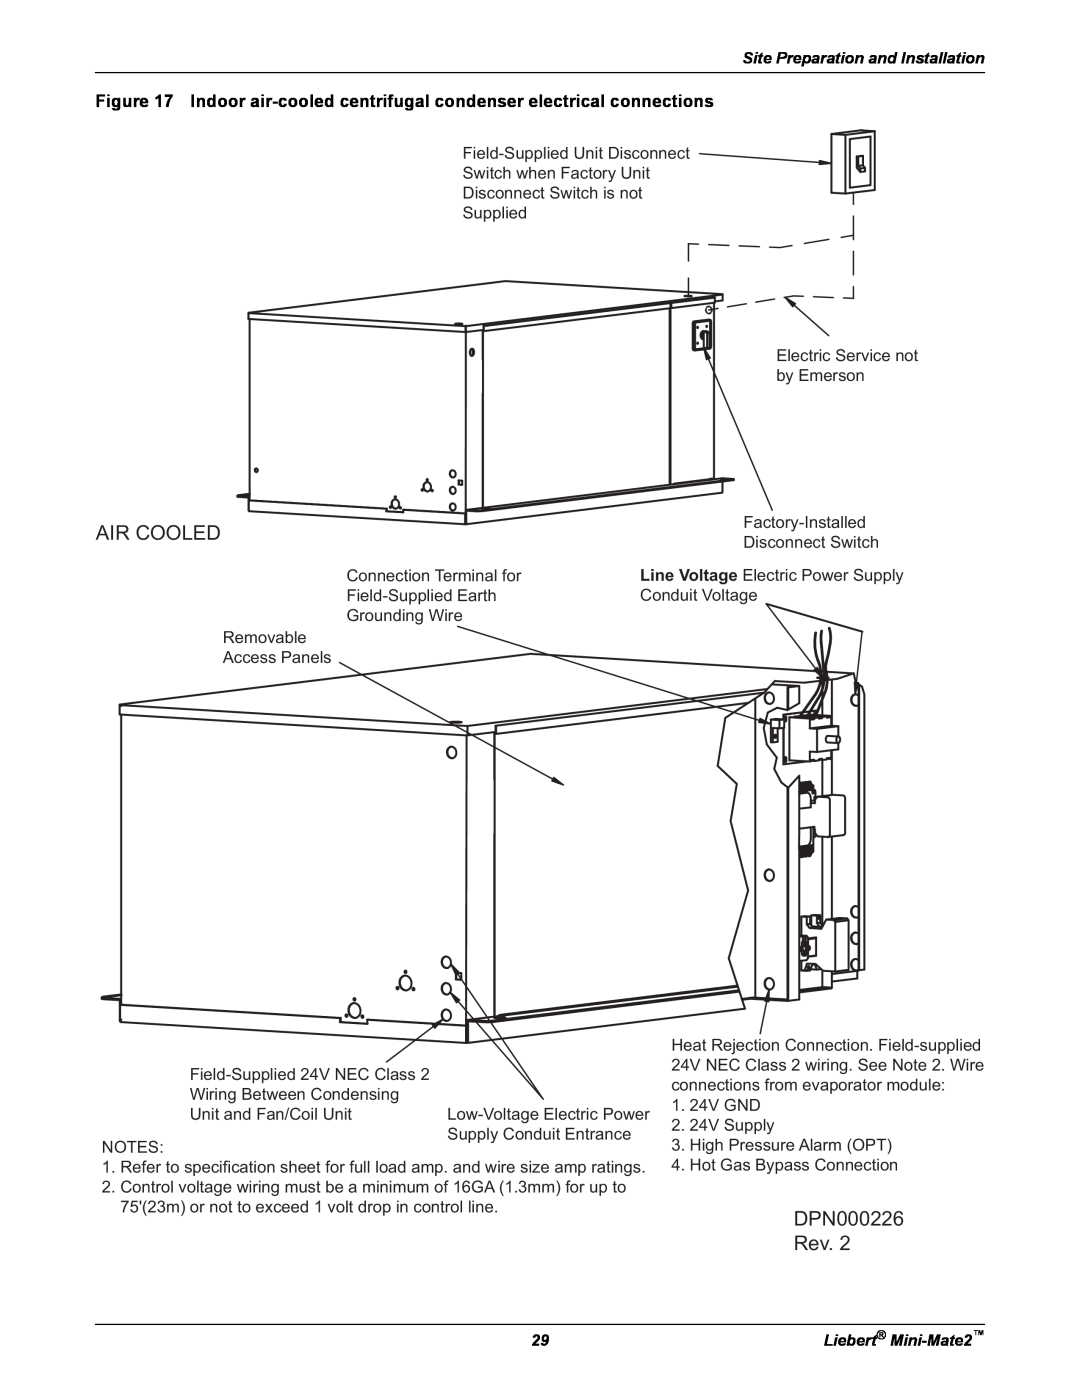 Emerson MINI-MATE2 user manual Air Cooled, DPN000226 Rev 